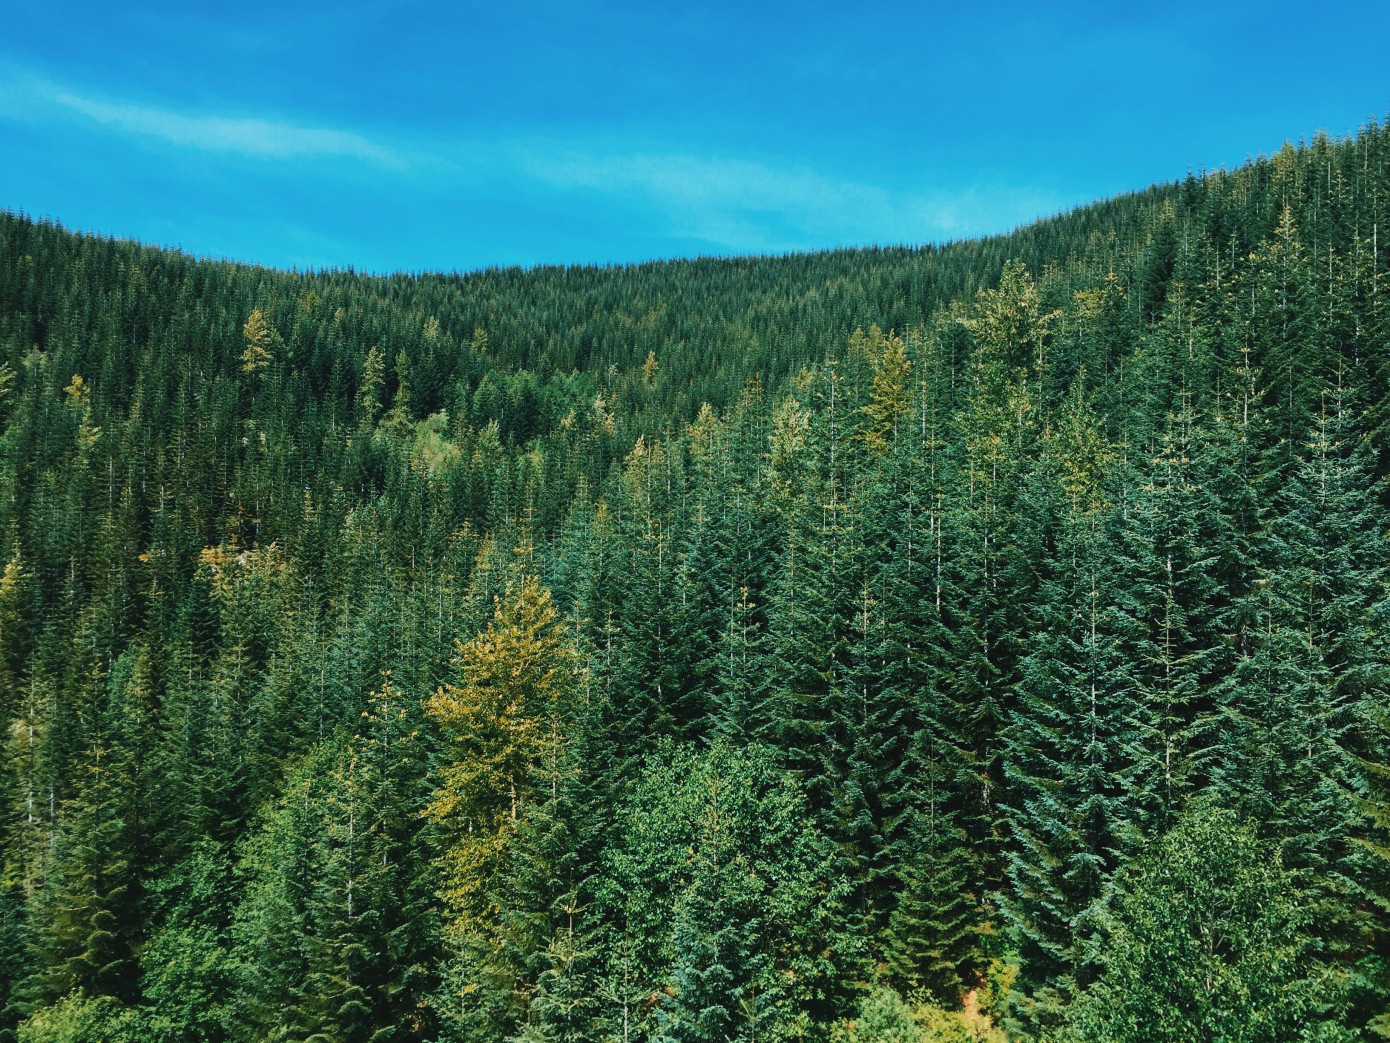 Рослесхоз: с 1 марта 2023 г. начнет действовать новая лесоустроительная инструкция